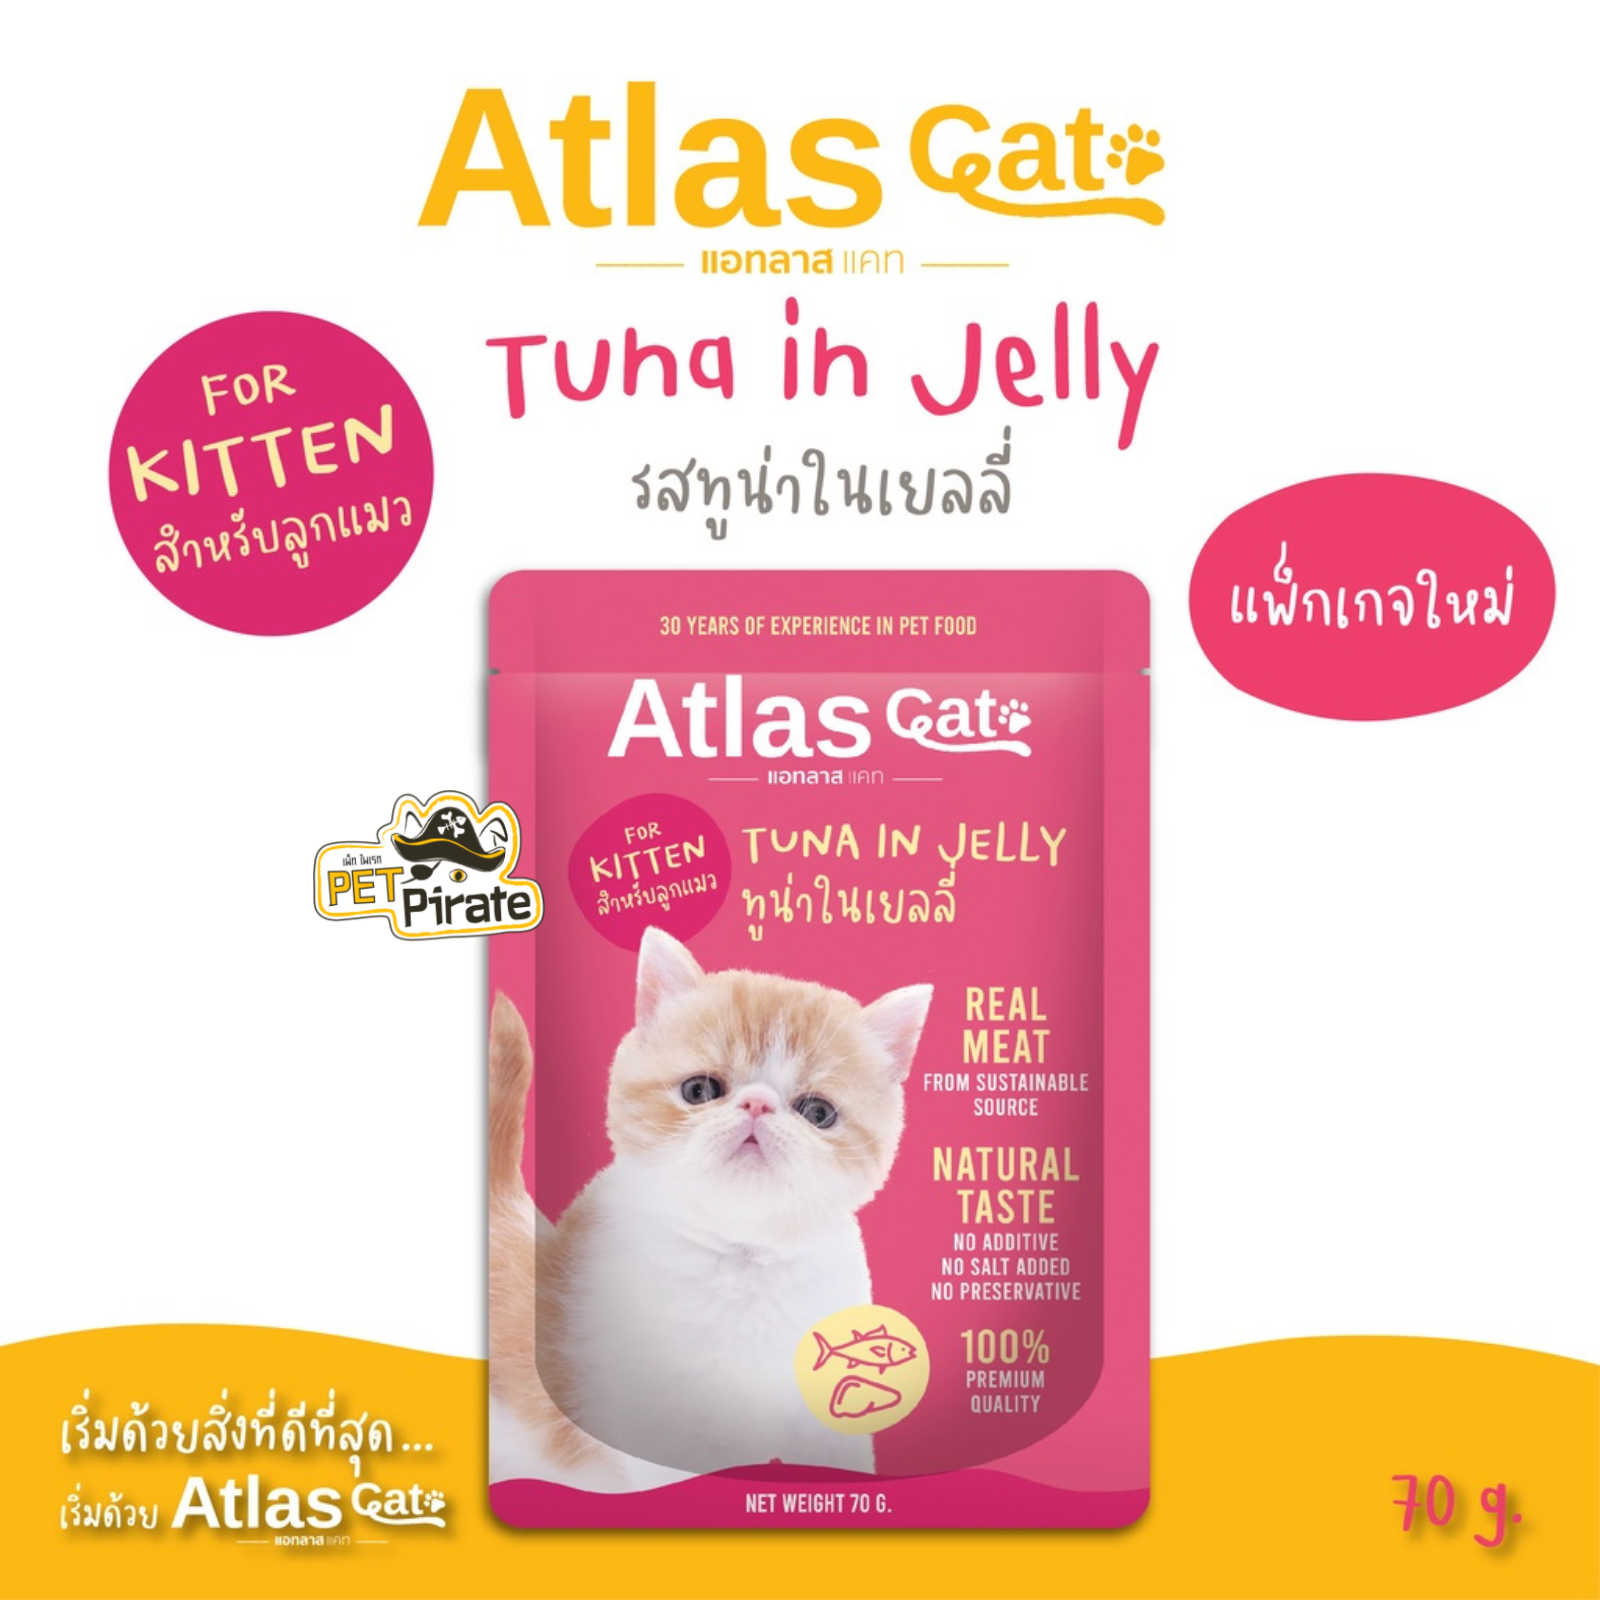 Atlas Cat อาหารเปียกลูกแมว ทูน่าในเยลลี่ [70 กรัม x 5 ซอง] ทำจากเนื้อปลาทูน่าเนื้อดี ลูกแมวอายุ 2 เดือน - 1ปี  70 g